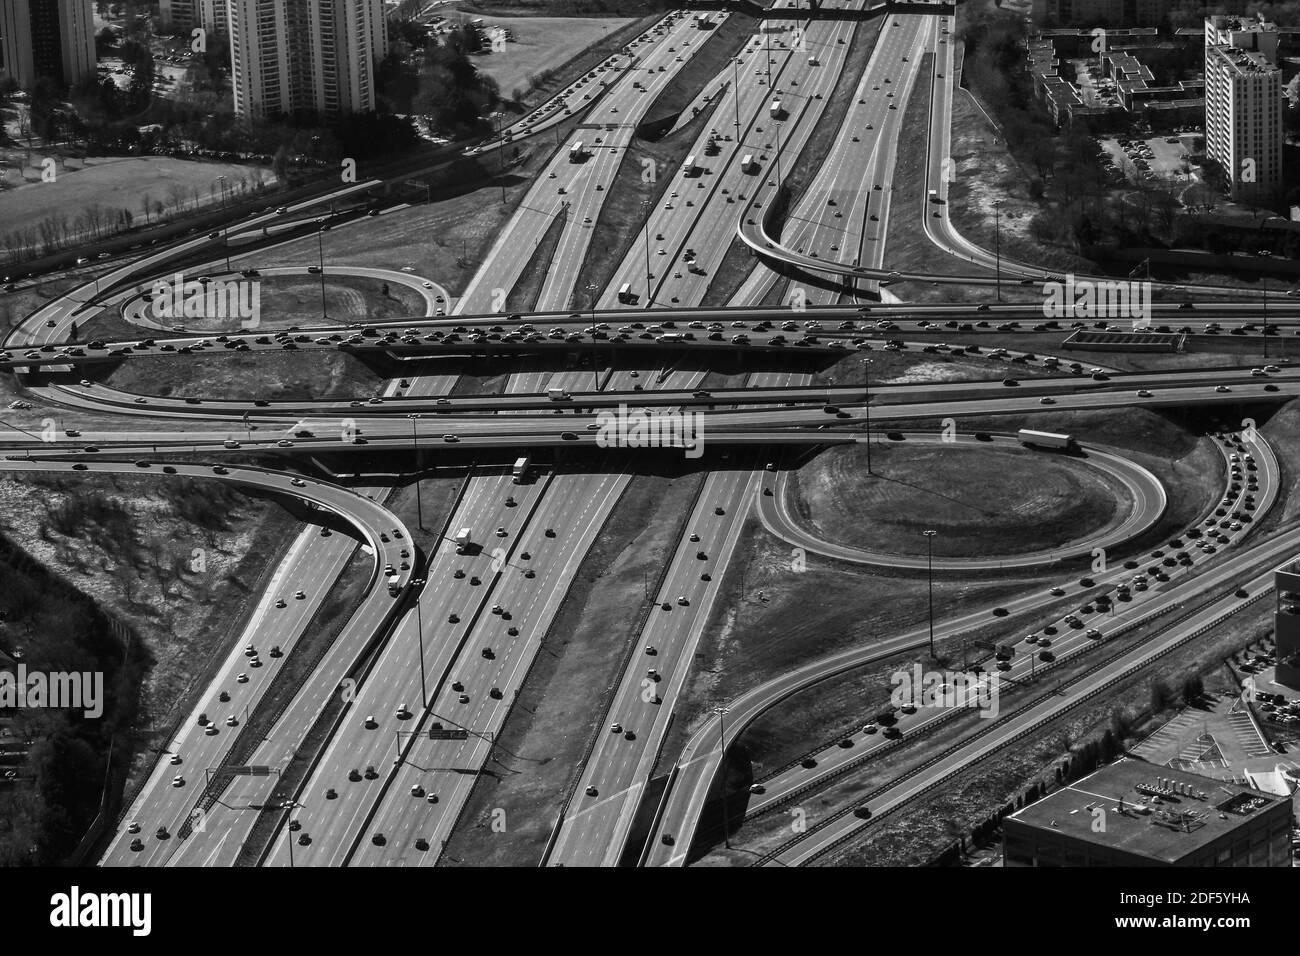 Eine Luftaufnahme in Graustufen von einer städtischen Stadtautobahn und Überführung ist voll mit Verkehr Stockfoto